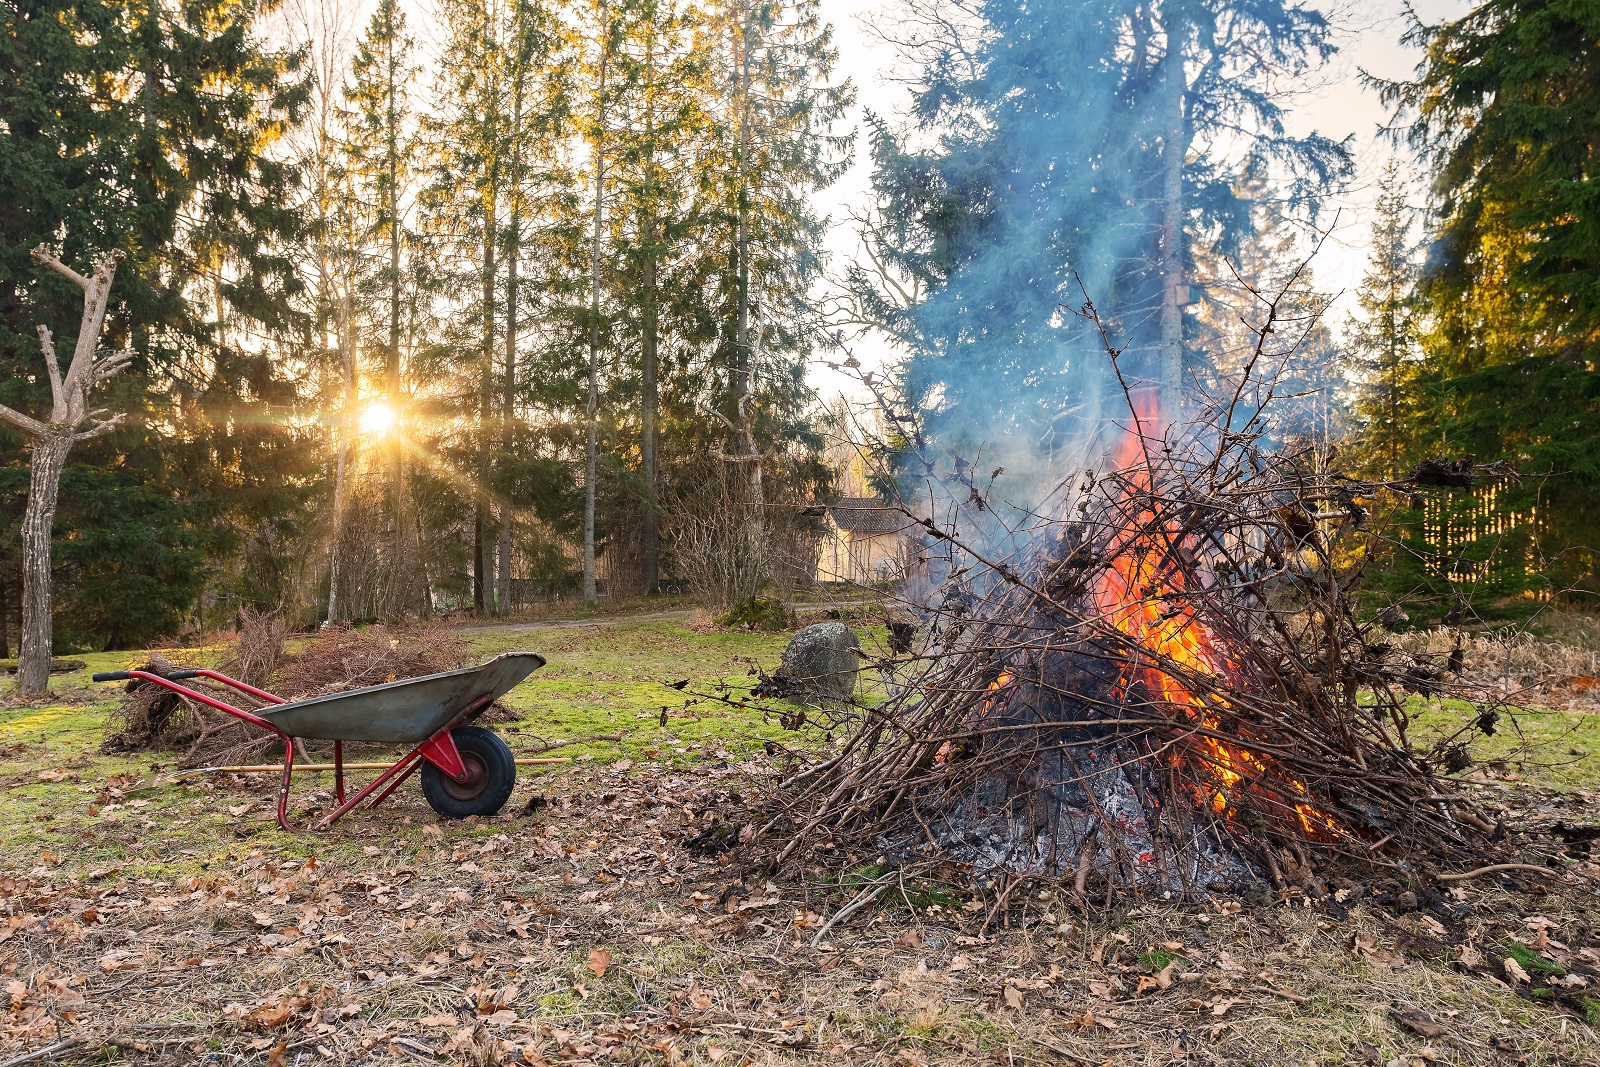 Interdiction de brûler les déchets verts ramassés au jardin.&nbsp;© stefanholm, Adobe Stock